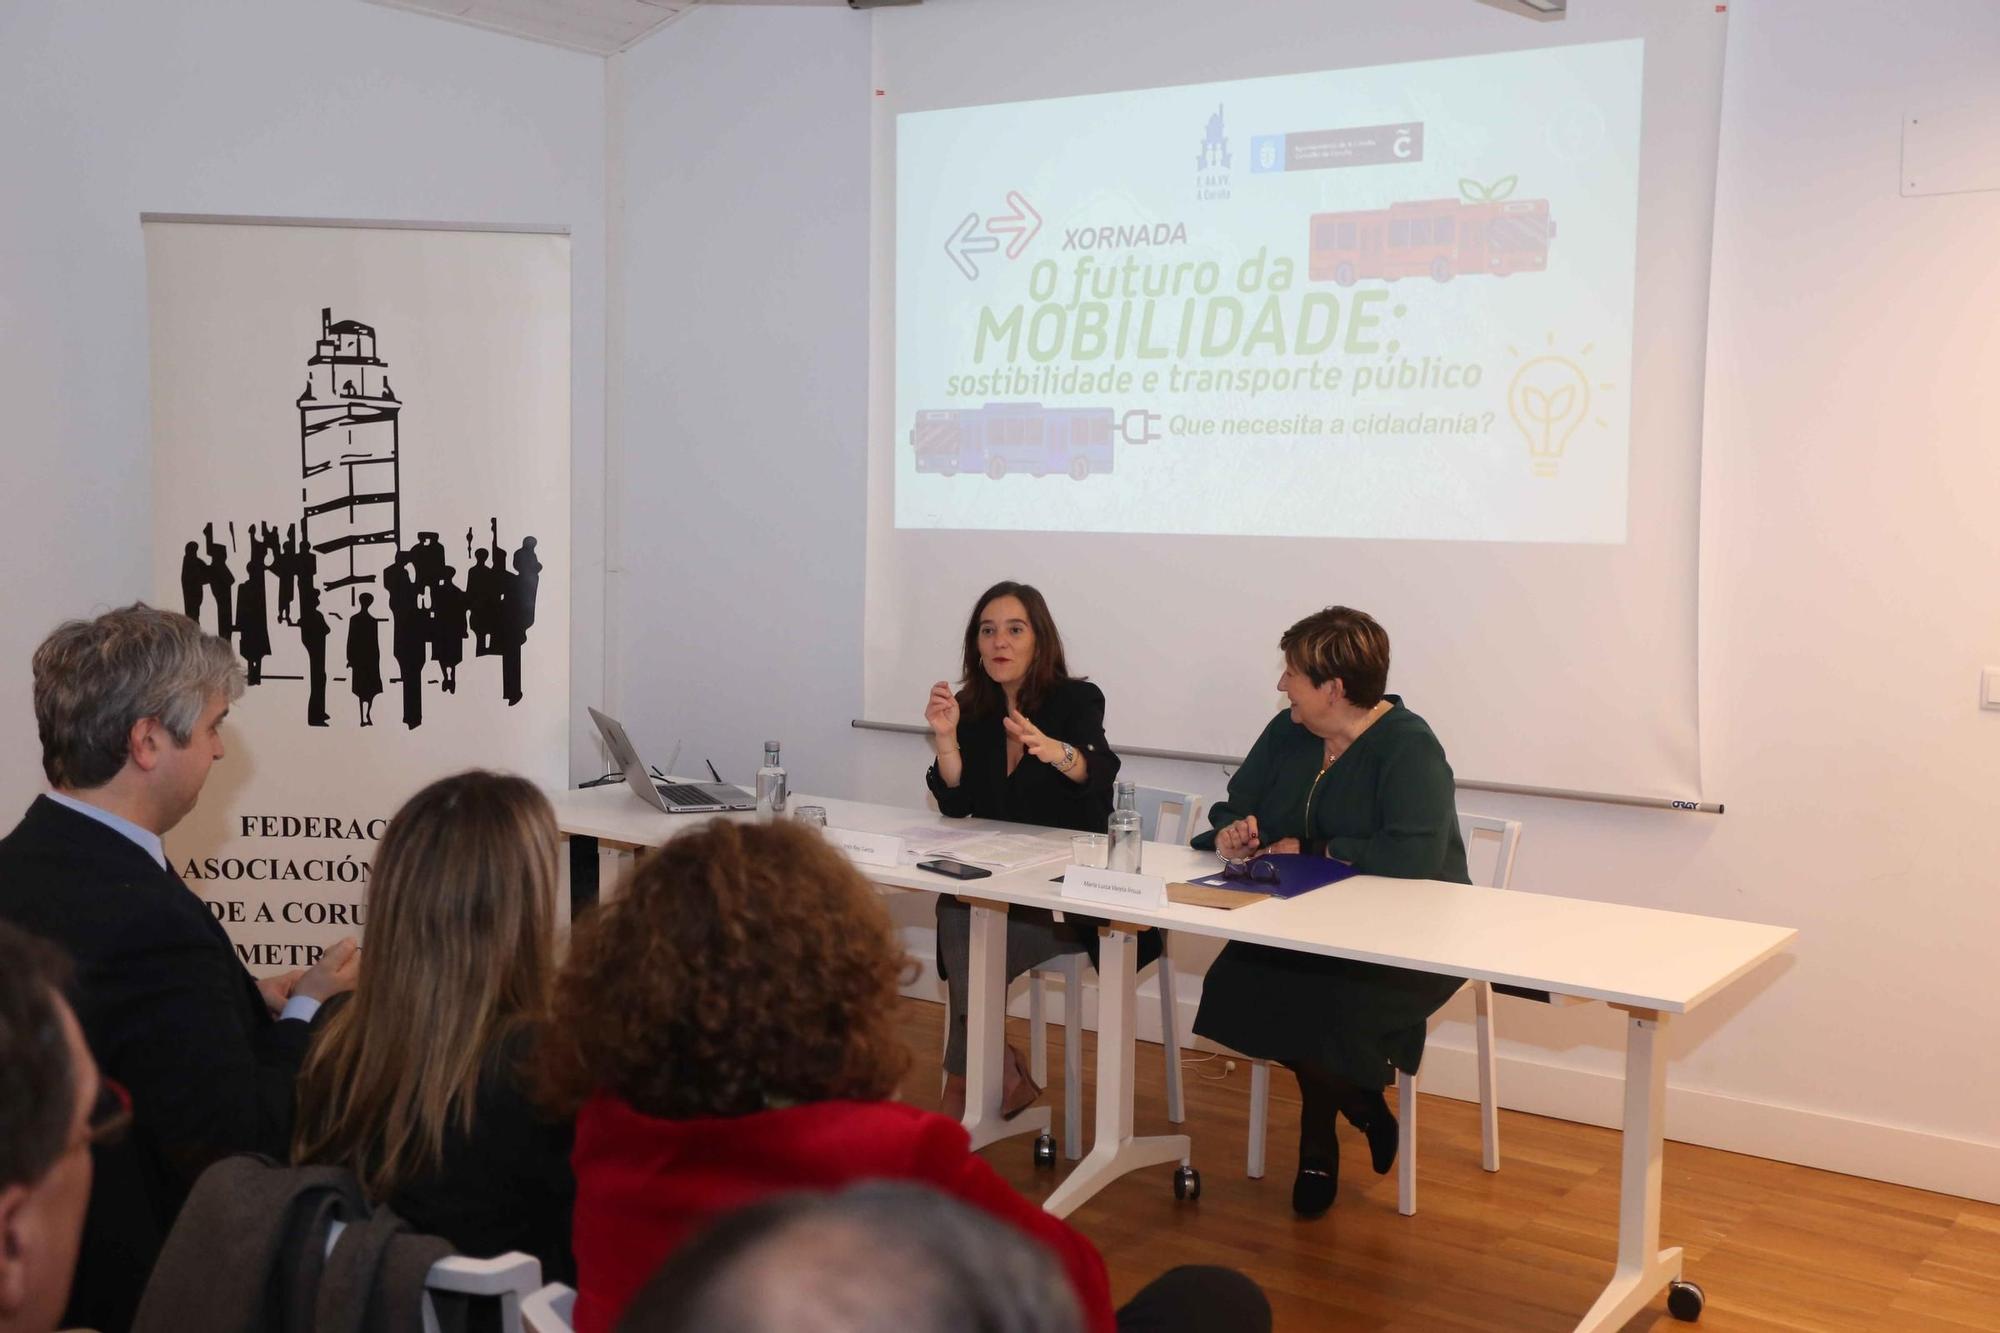 Jornada 'O futuro da mobilidade: sostenibilidade e transporte público' en A Coruña